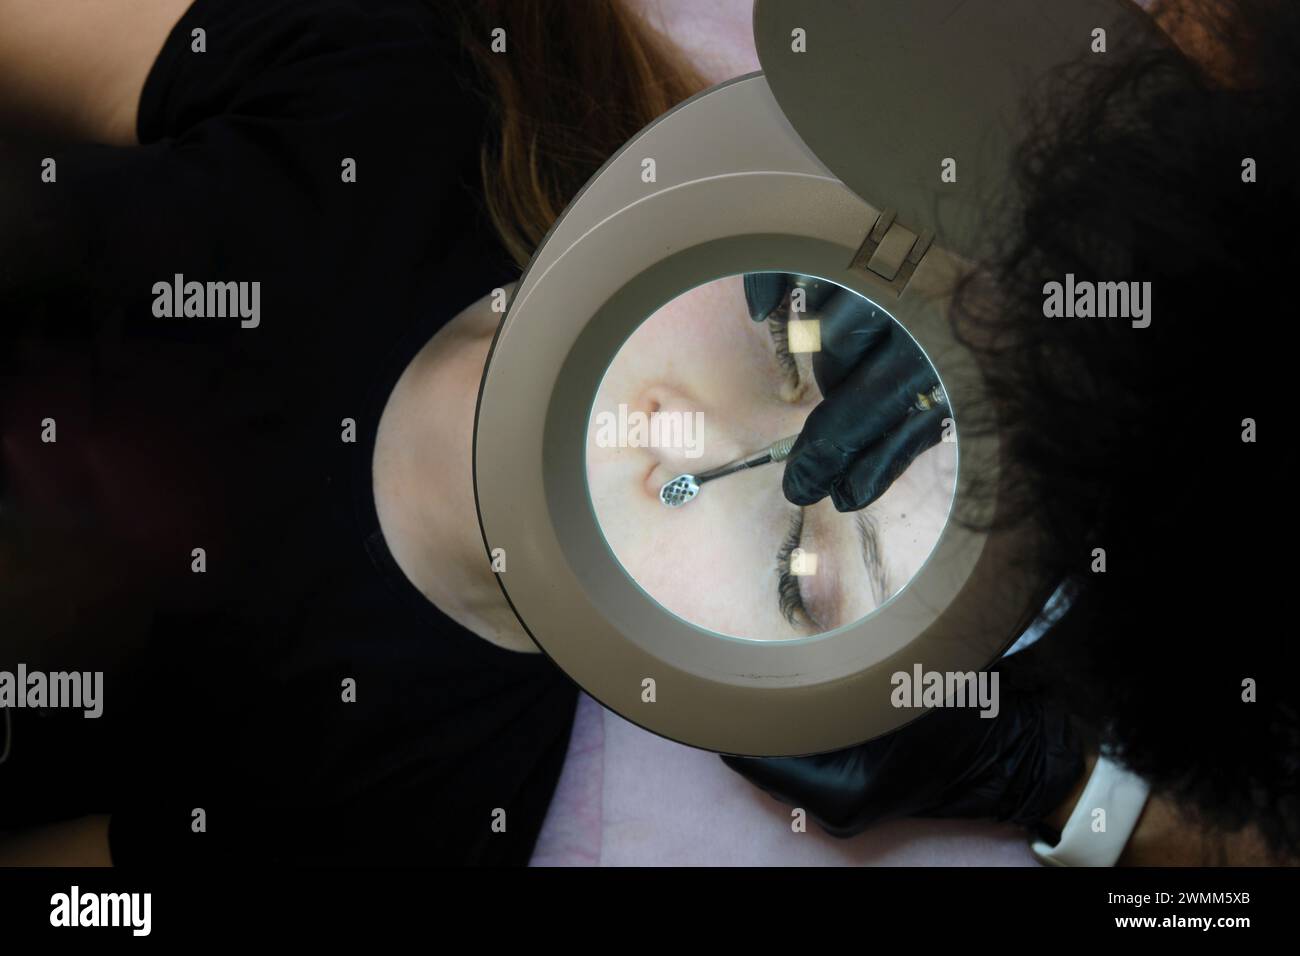 Un cosmetologo durante una sessione di pulizia del viso utilizzando attrezzature speciali per trattare la pelle del cliente, osserva attraverso una lampada con lente d'ingrandimento. Foto orizzontale Foto Stock